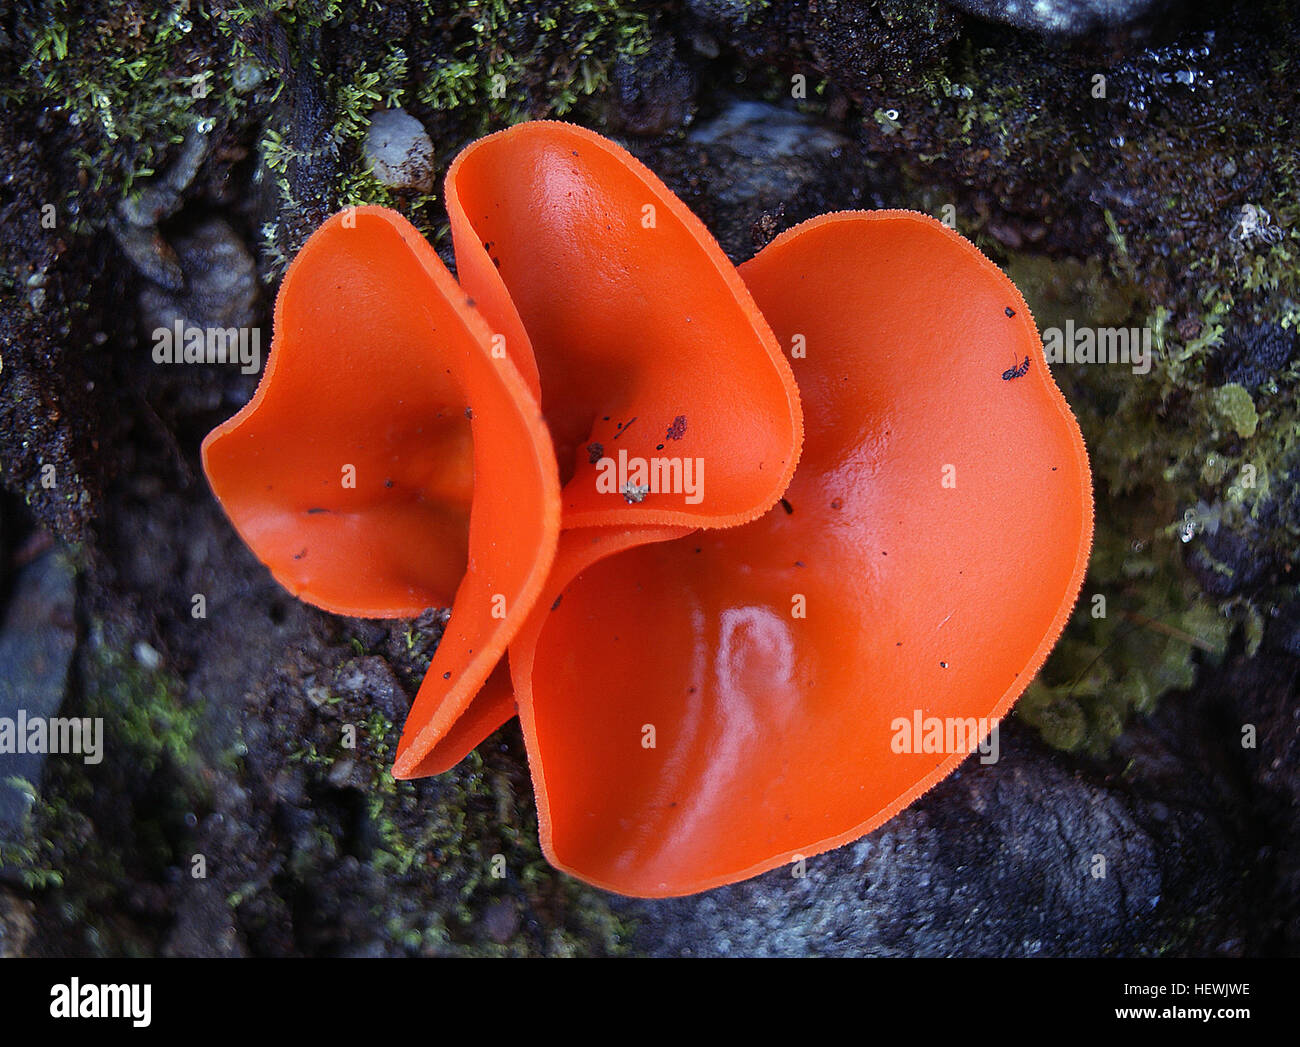 Orangenschale Pilz (Aleuria Aurantia) oder Orange Fairy Tasse Pilz ist eine markante Pilze, die finden Sie wachsen in ganz Nordamerika, besonders im Sommer und Herbst. Dieser Pilz, wie andere Mitglieder der Familie Tasse Pilze hat einen becherartigen Körper mit Falten und ist eine brillante orange Farbe, die manche können Fehler für eine weggeworfene Orangenschale. Sporen sind groß und haben stachelige Projektionen. Stockfoto